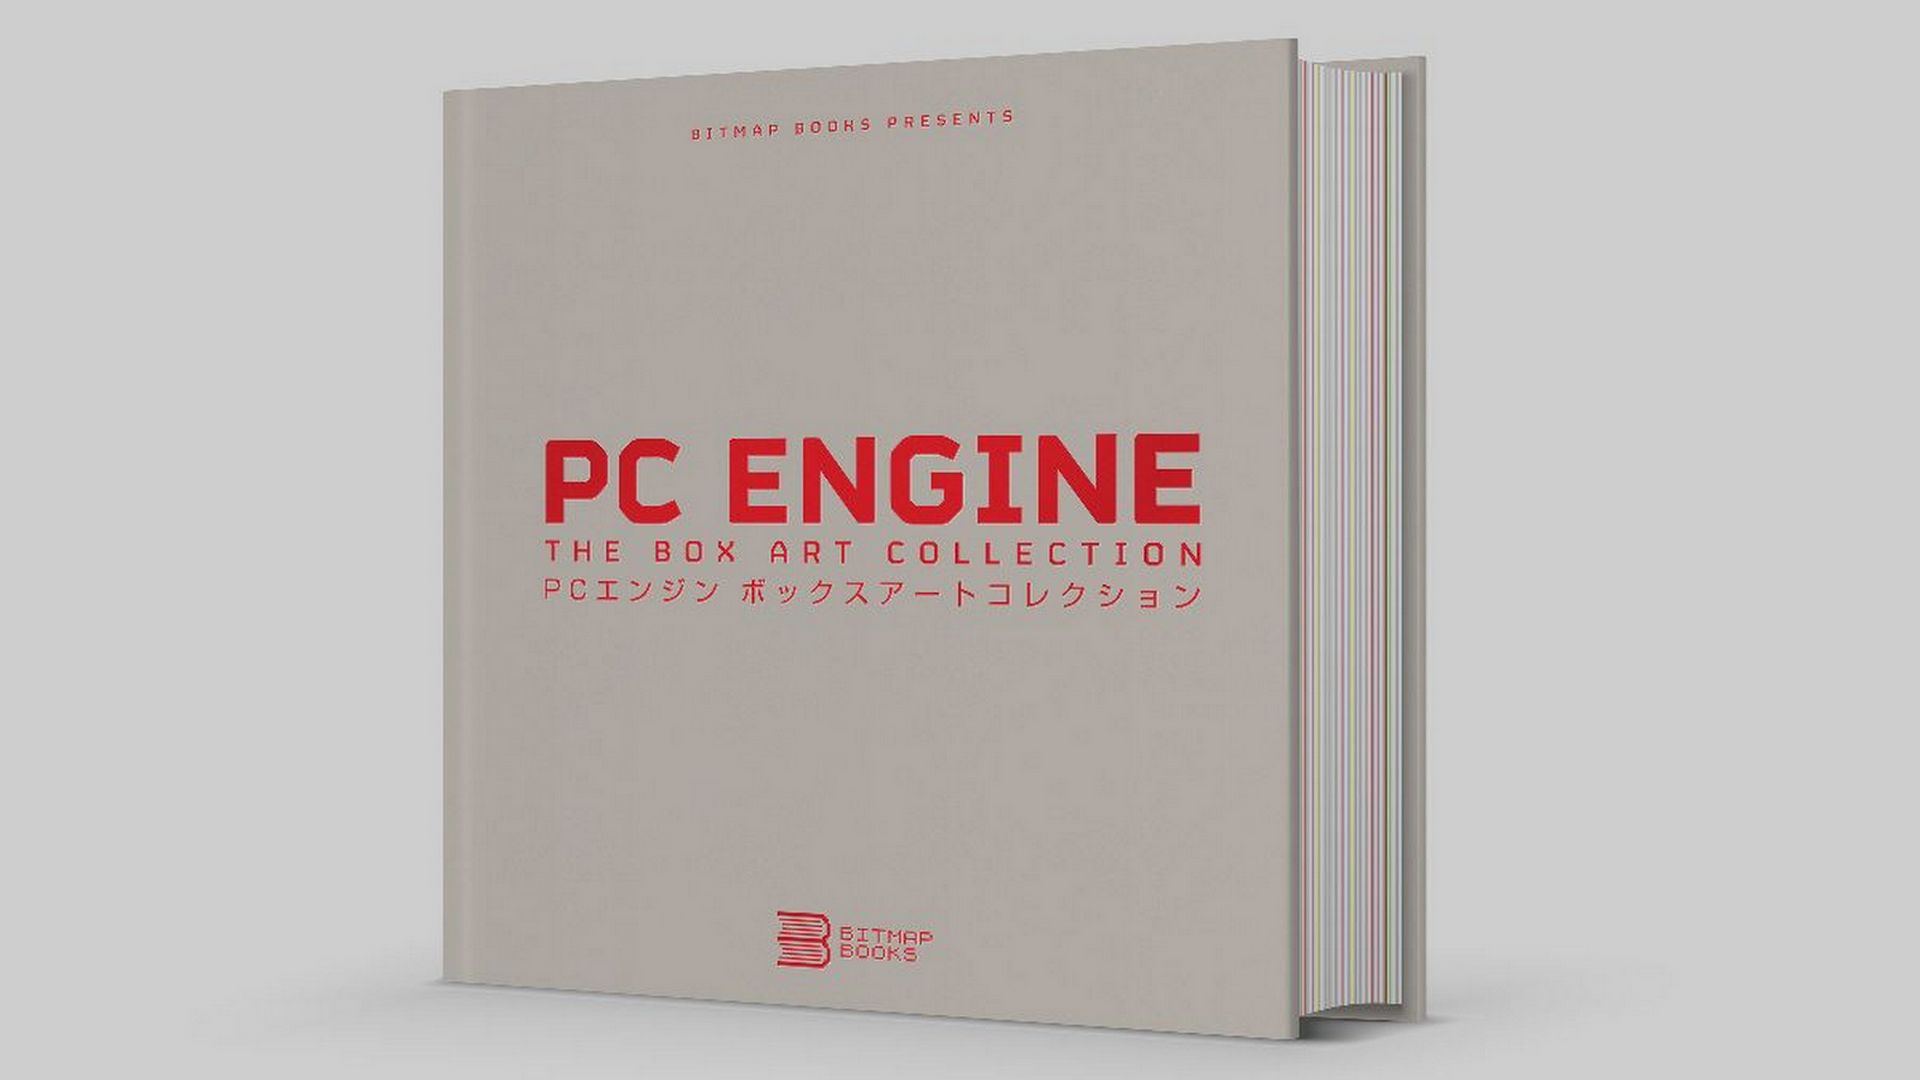 PC Engine: The Box Art Collection ist das nächste Buch von Bitmap Books.